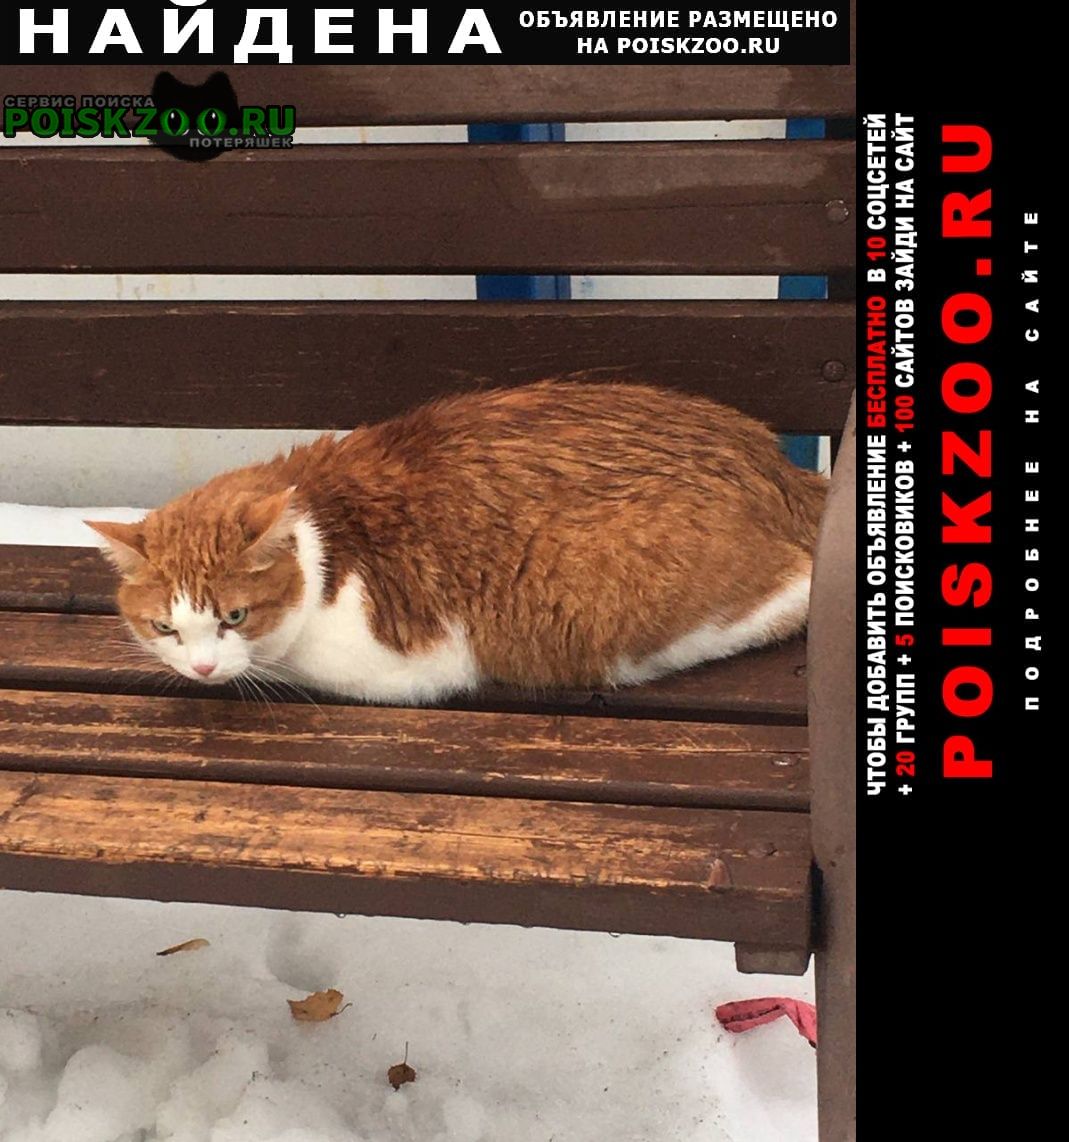 Найден кот ик, рыжий с белым, домашний. Москва